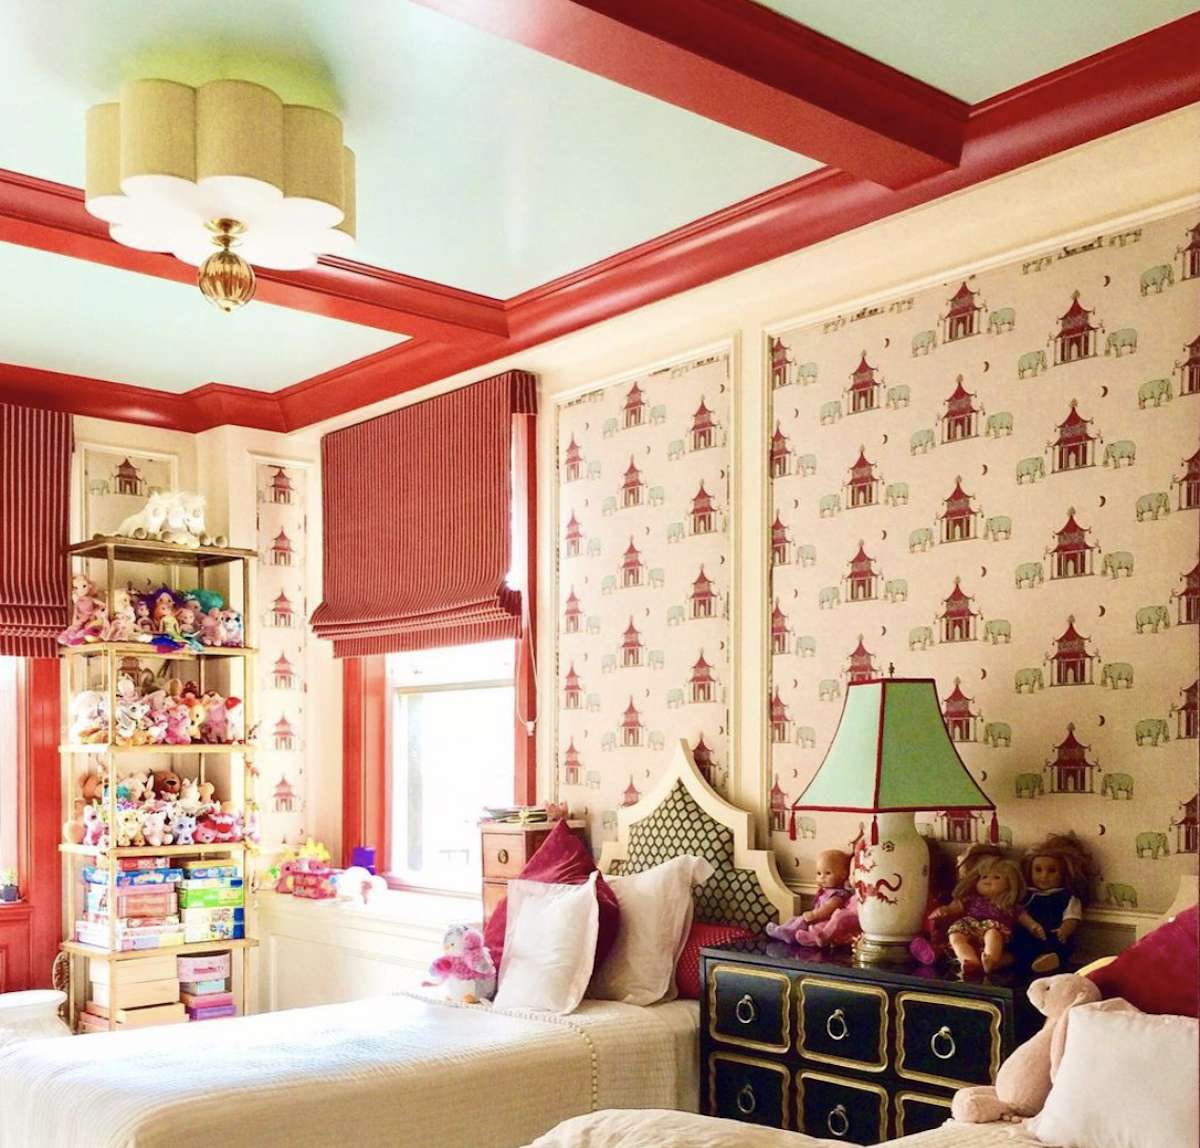 chambre d'enfant avec maisons rouges sur le papier peint, poutres rouges apparentes sur le plafond